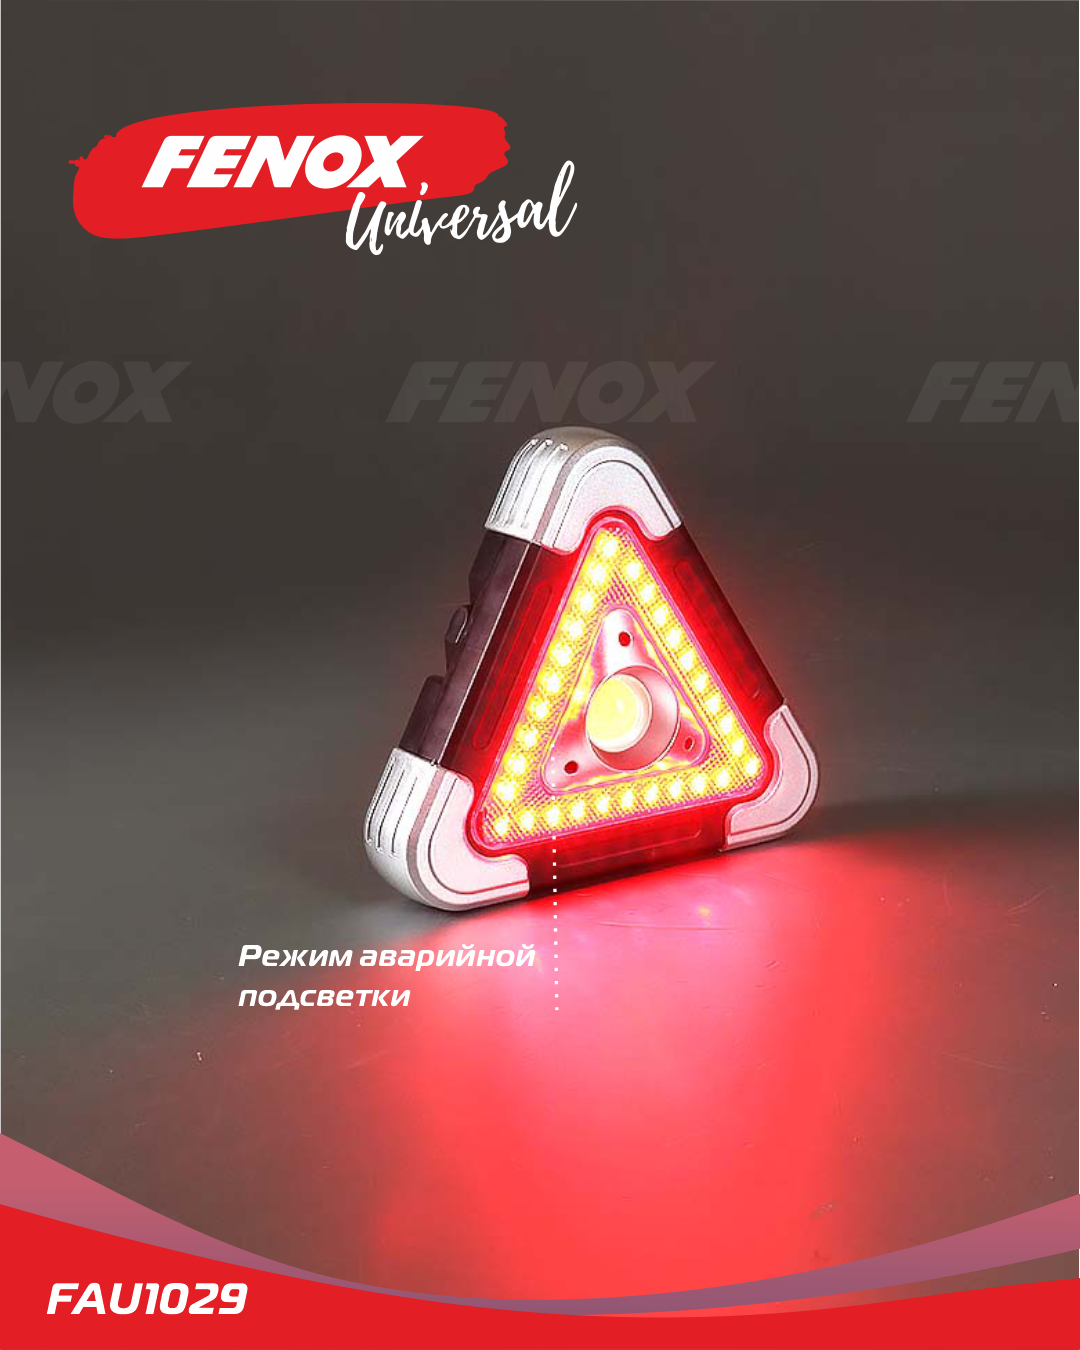 Фонарь - прожектор многофункциональный с аварийной подсветкой - Fenox FAU1029